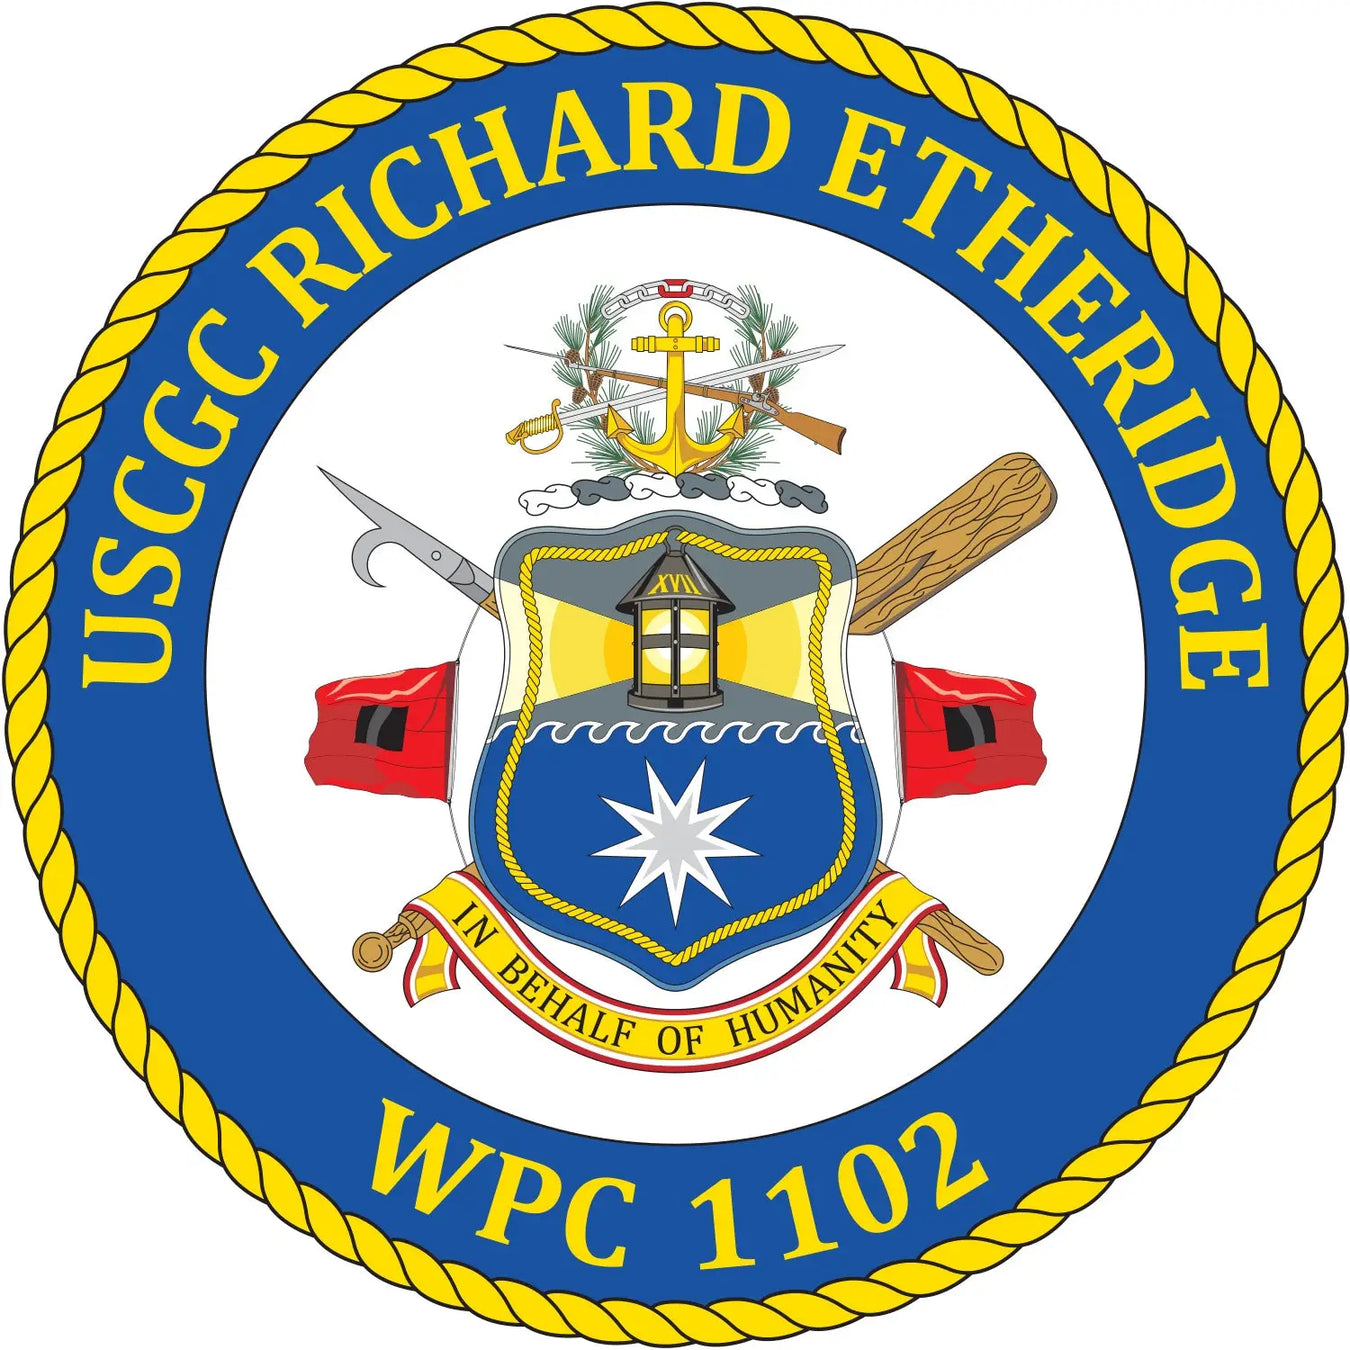 USCGC Richard Etheridge (WPC-1102)